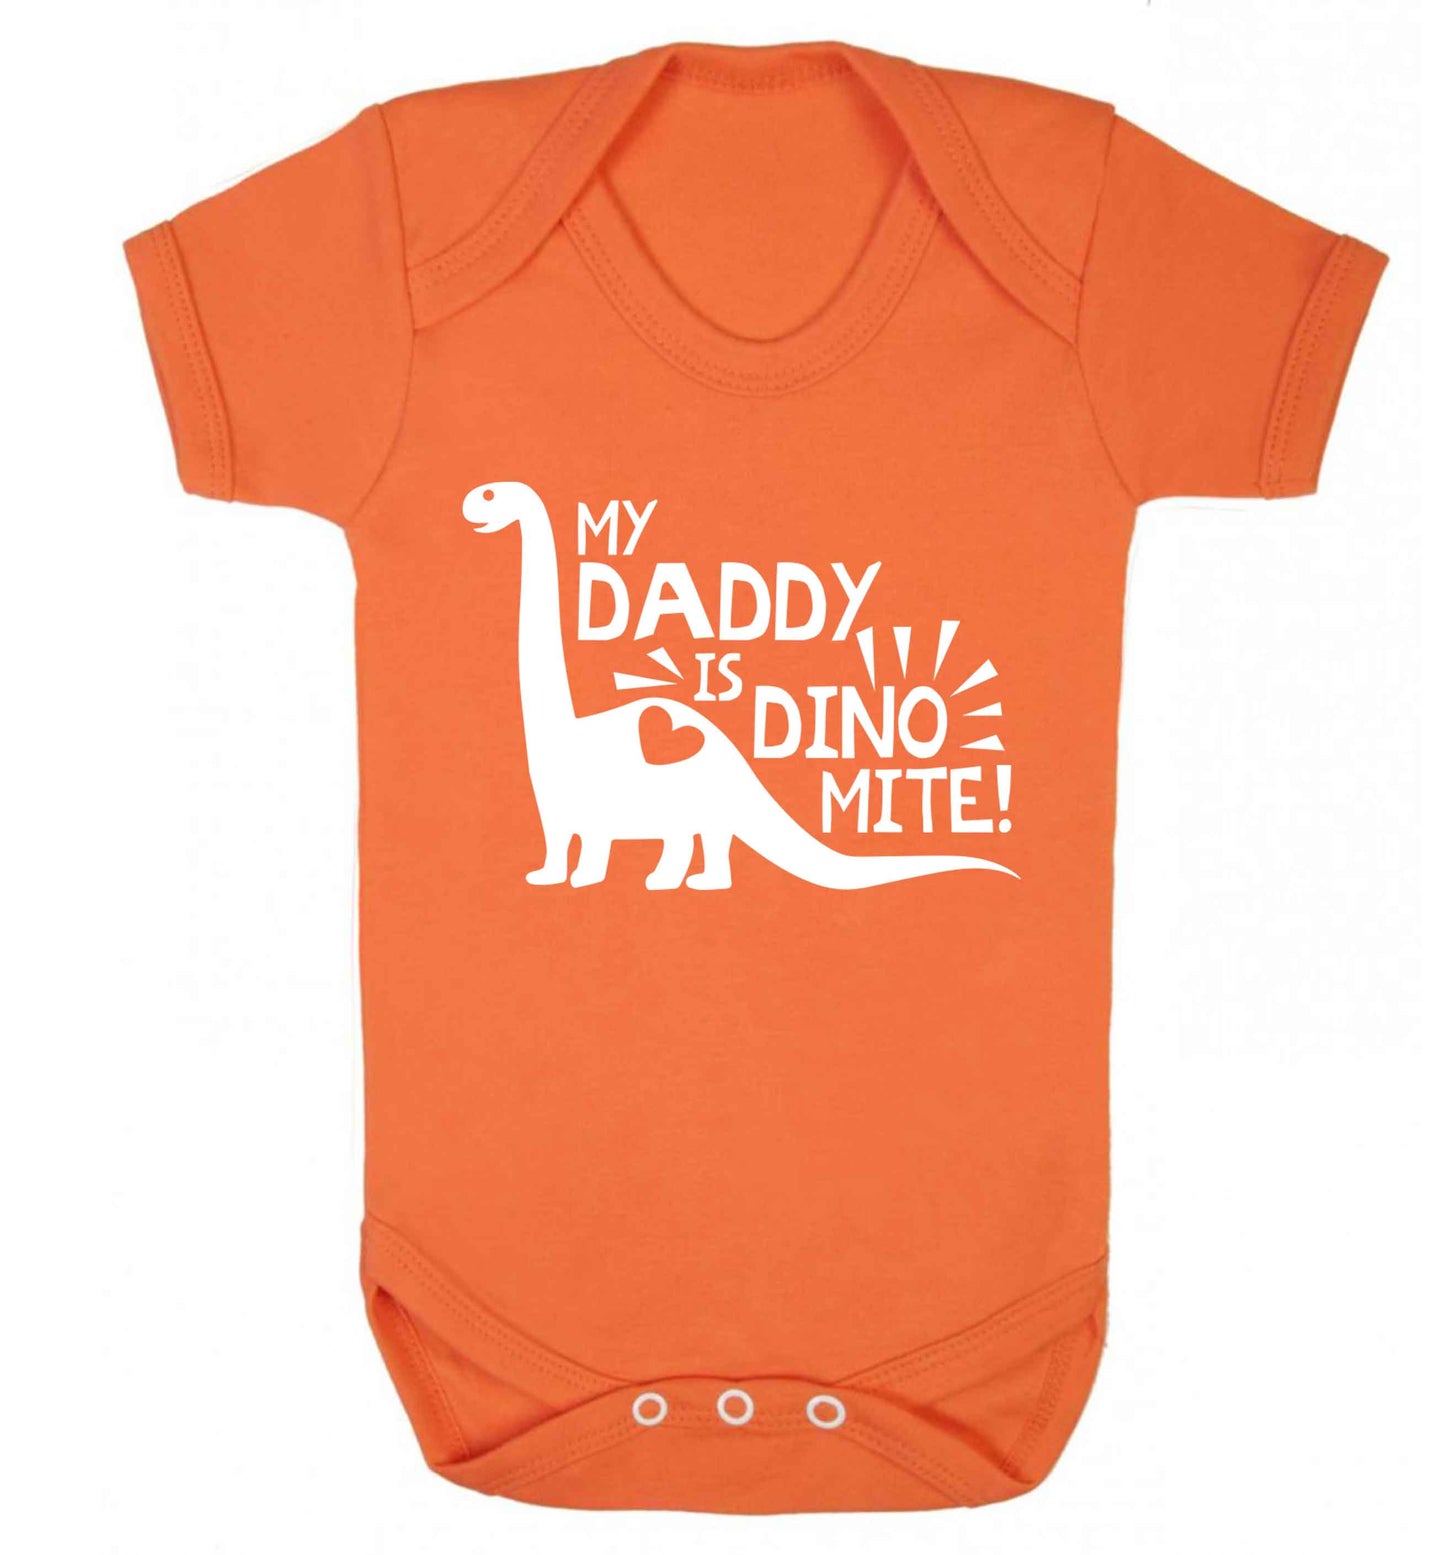 My daddy is dinomite! Baby Vest orange 18-24 months